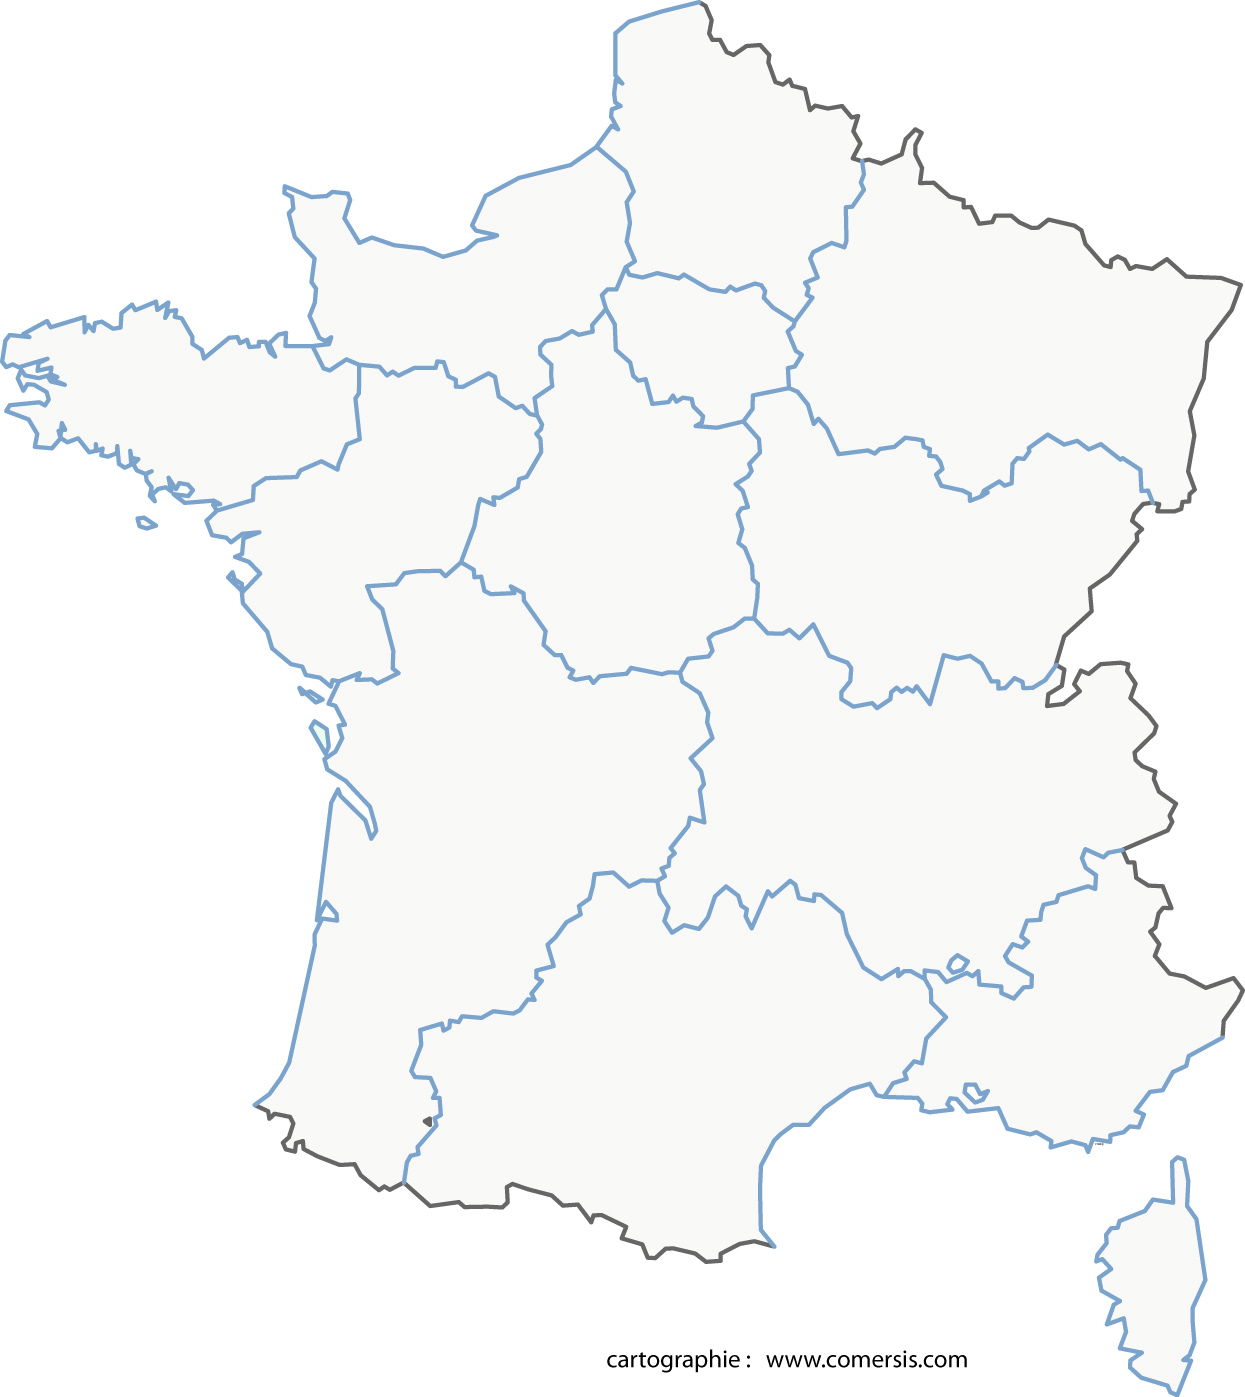 Une carte administrative de la France en téléchargement libre et gratuit  (nouvelle diffusion)